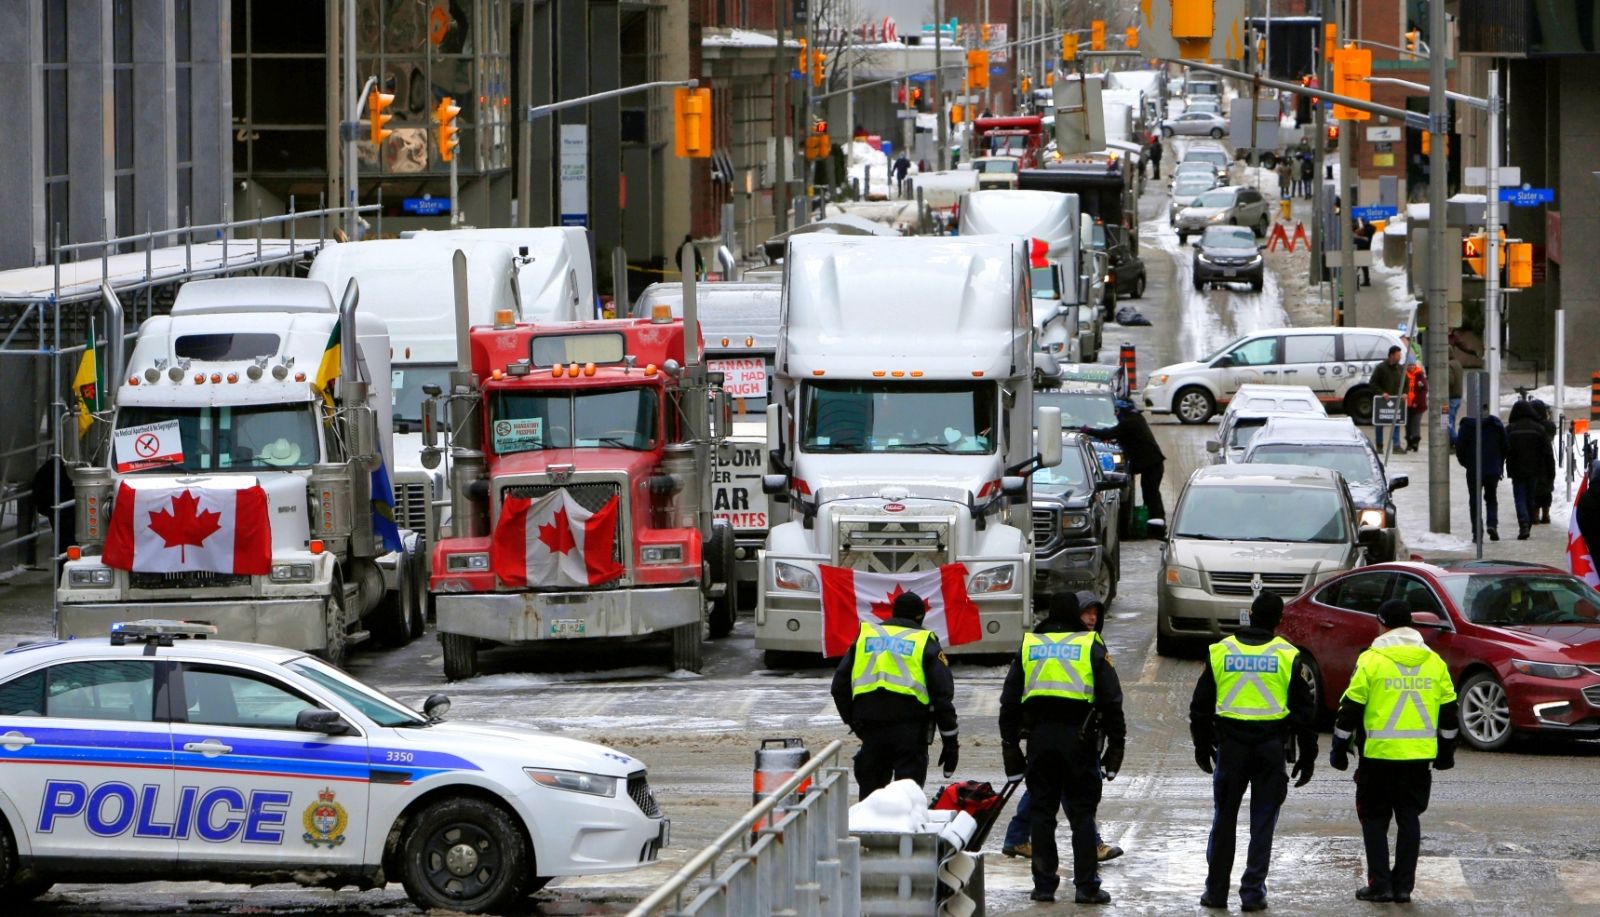 Los camioneros pudieran ser suspendidos, retiradas sus licencias y hasta enfrentar juicios por actos ilegales a tenor de la Ley de la provincia de Ontario.